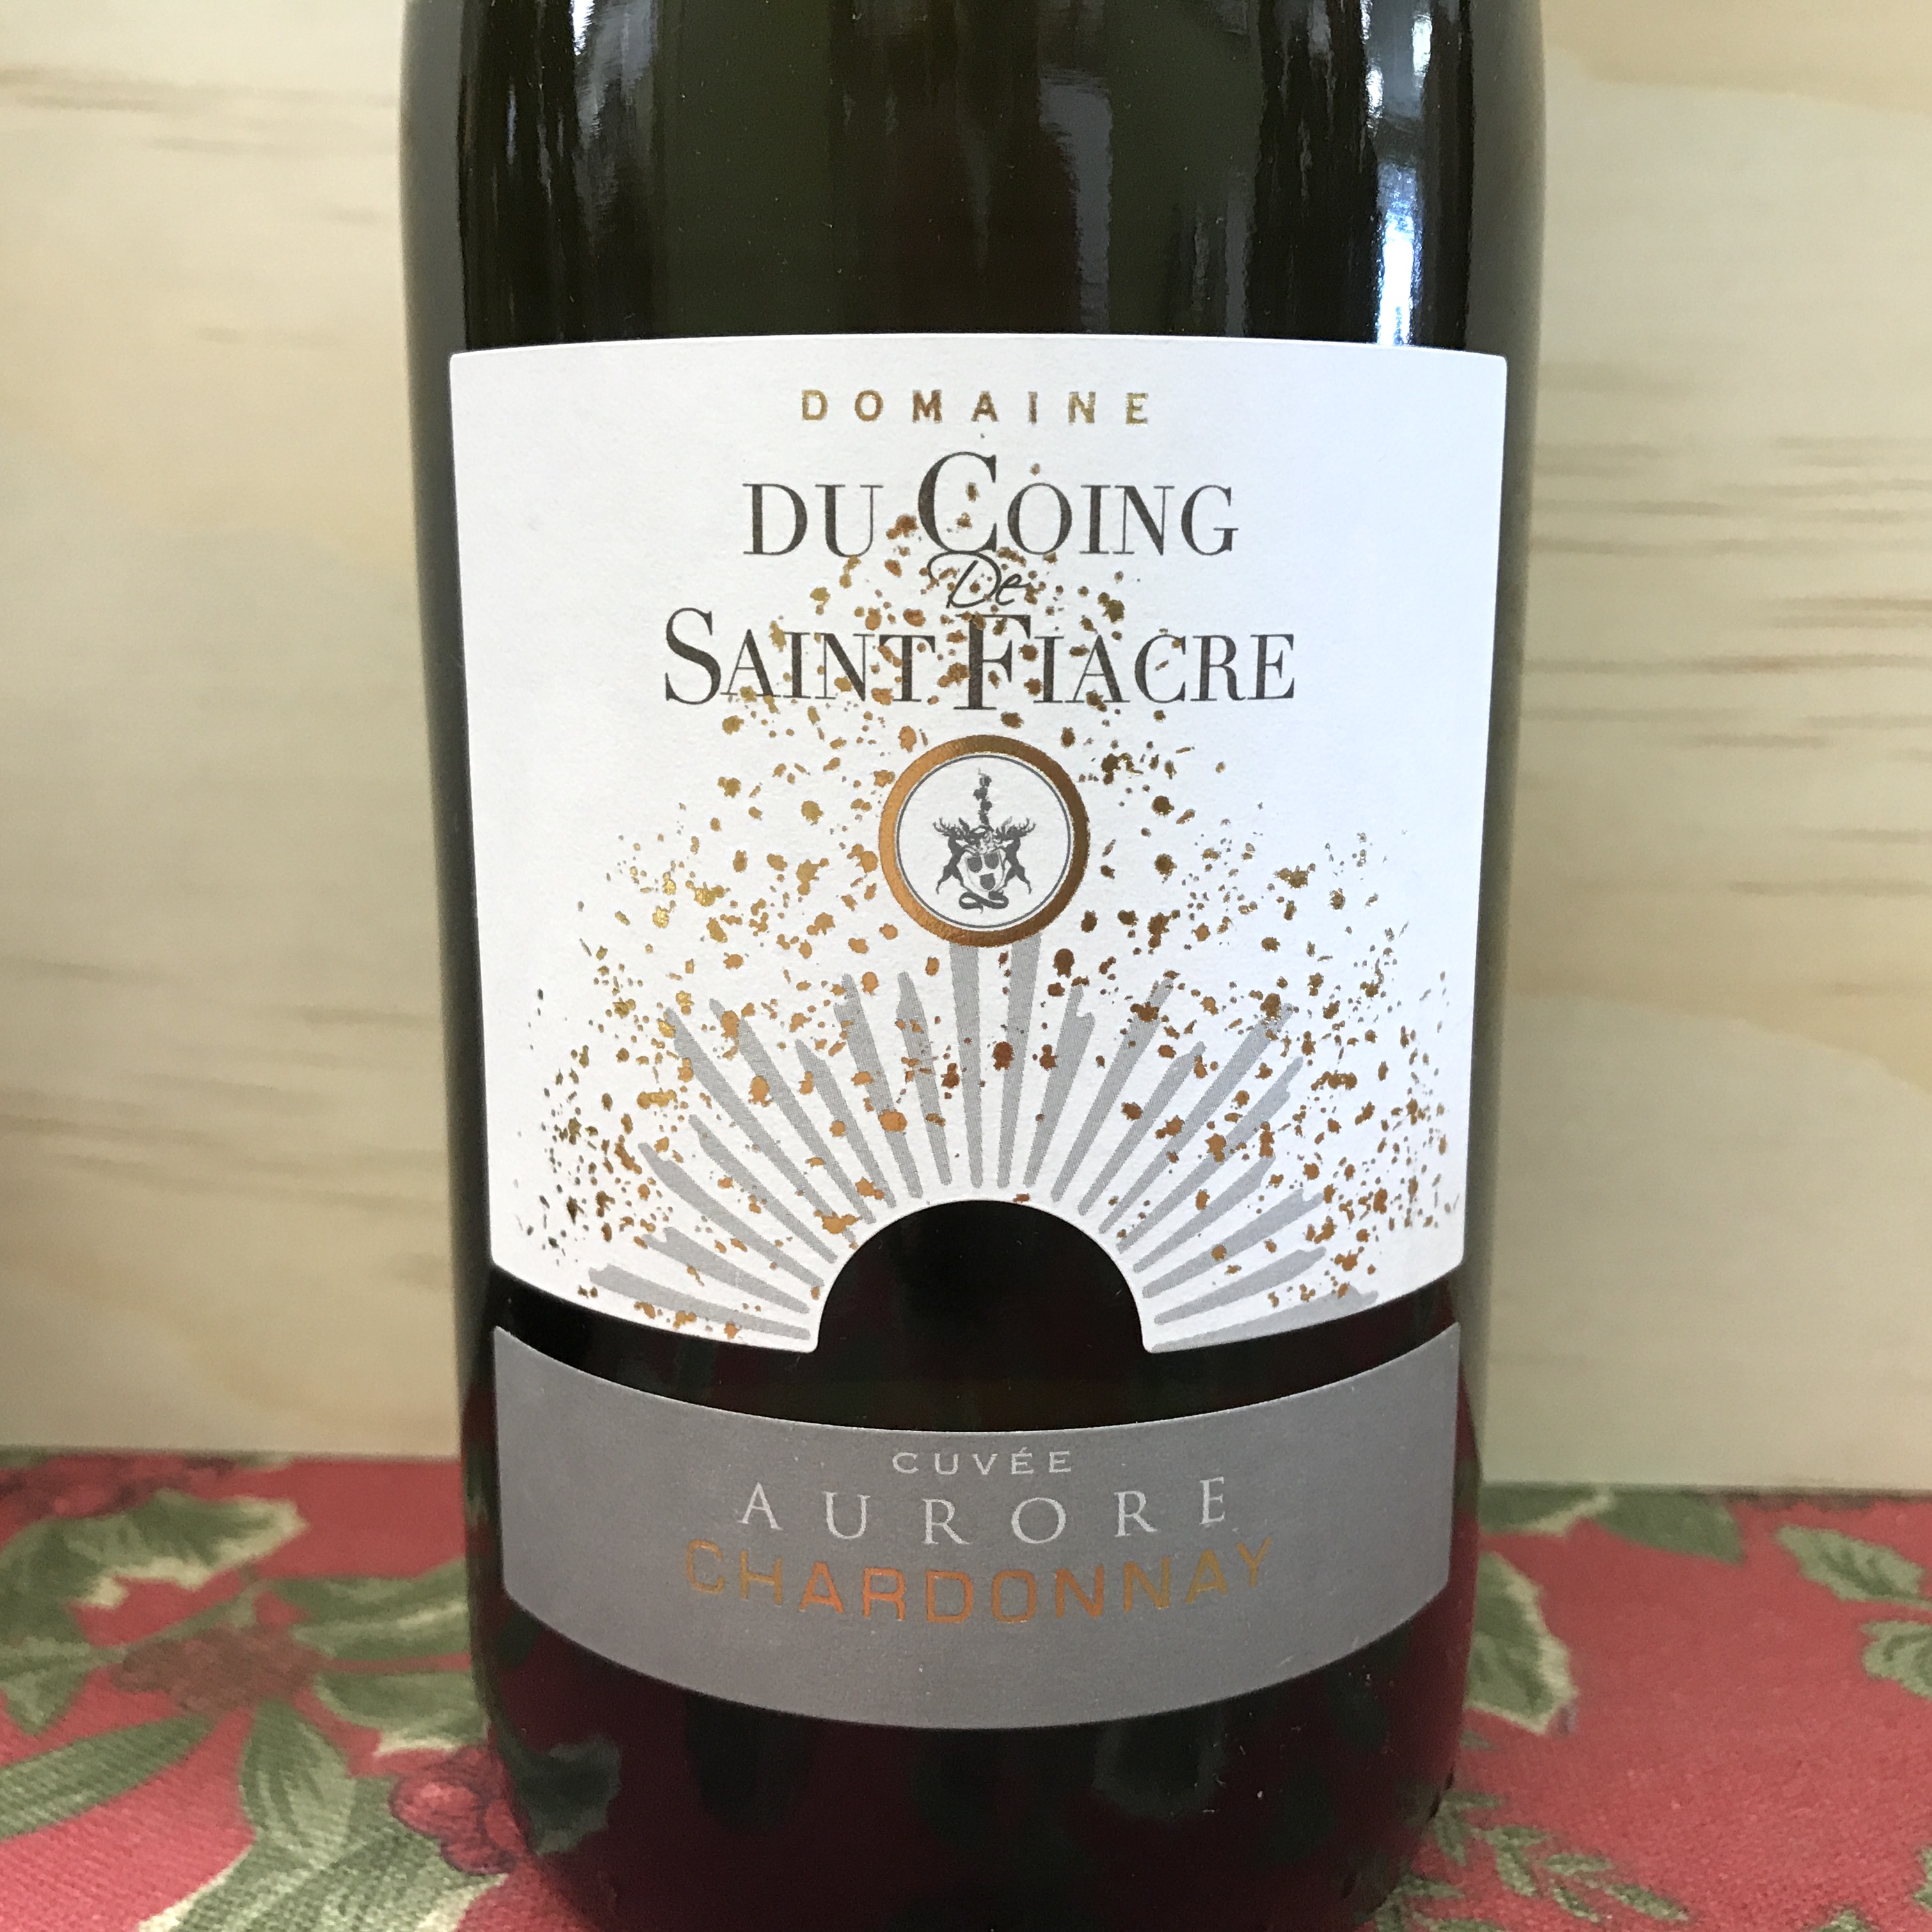 Domaine du Coing de Saint Fiacre Aurore Chardonnay 2018